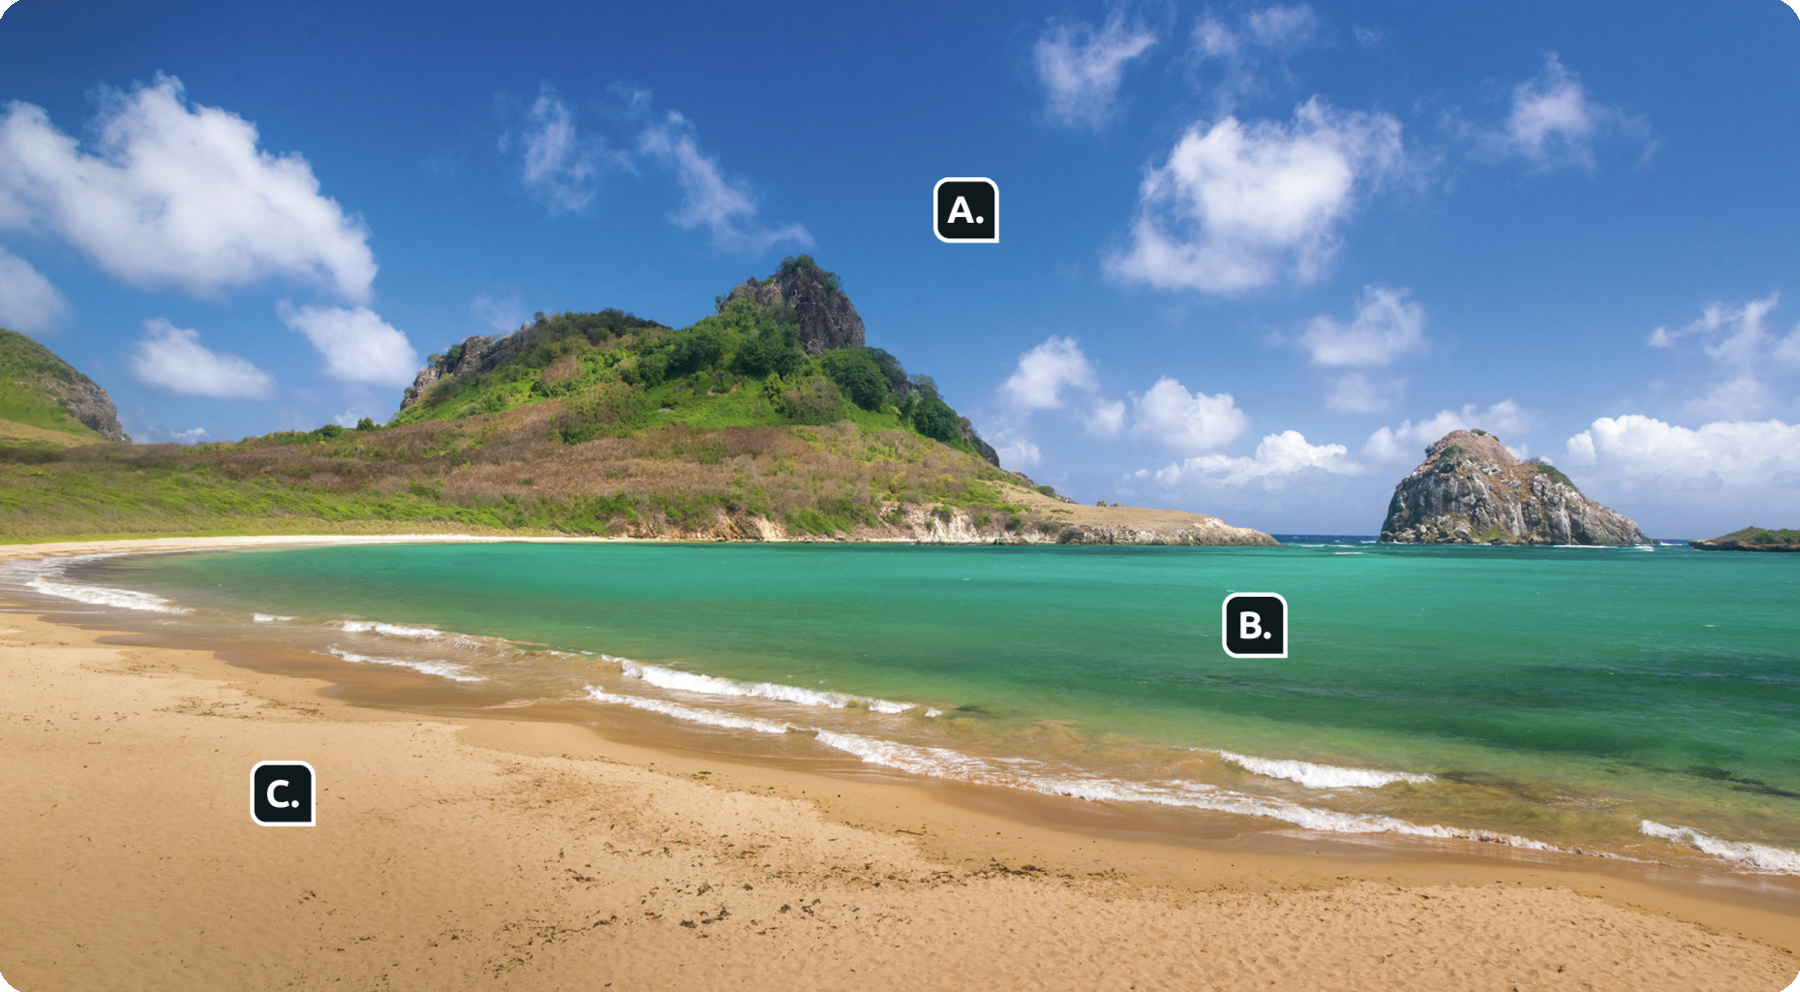 Fotografia. Orla de uma praia com um morro coberto por vegetação, ao fundo, céu azul com algumas nuvens, indicado com a letra A. Mar com a cor esverdeada, letra B, e a faixa de areia à esquerda, letra C.